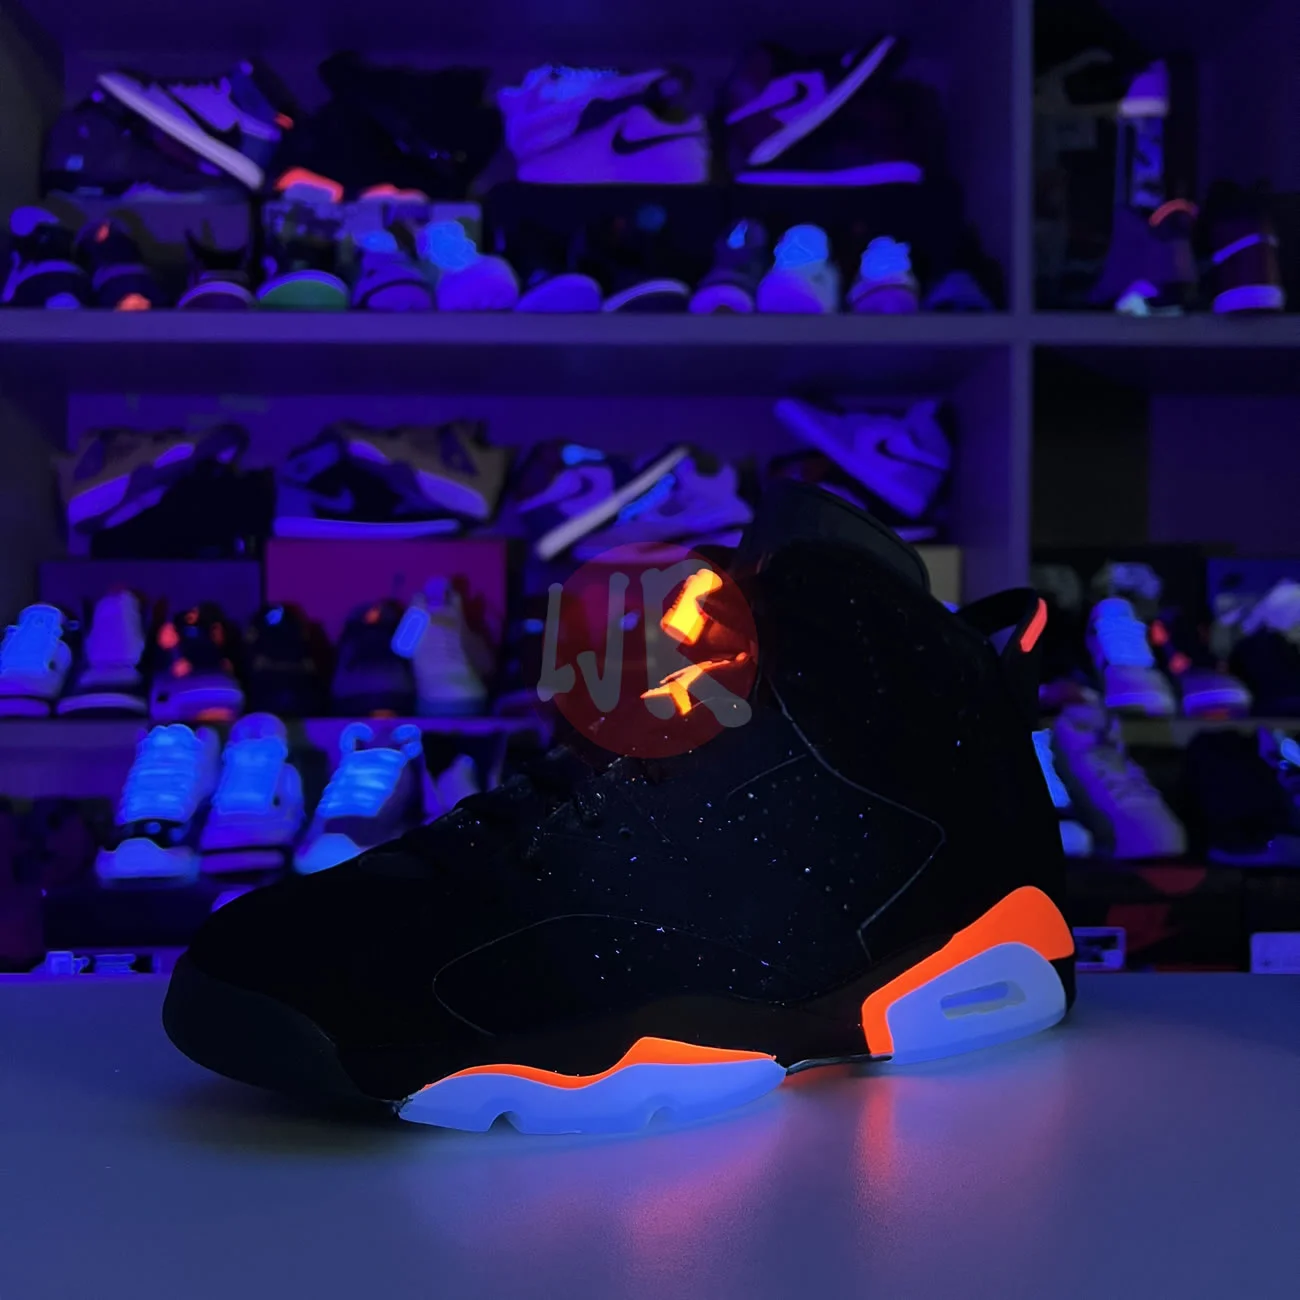 Air Jordan 6 Retro Black Infrared 2019 384664 060 Ljr Sneakers (14) - bc-ljr.com